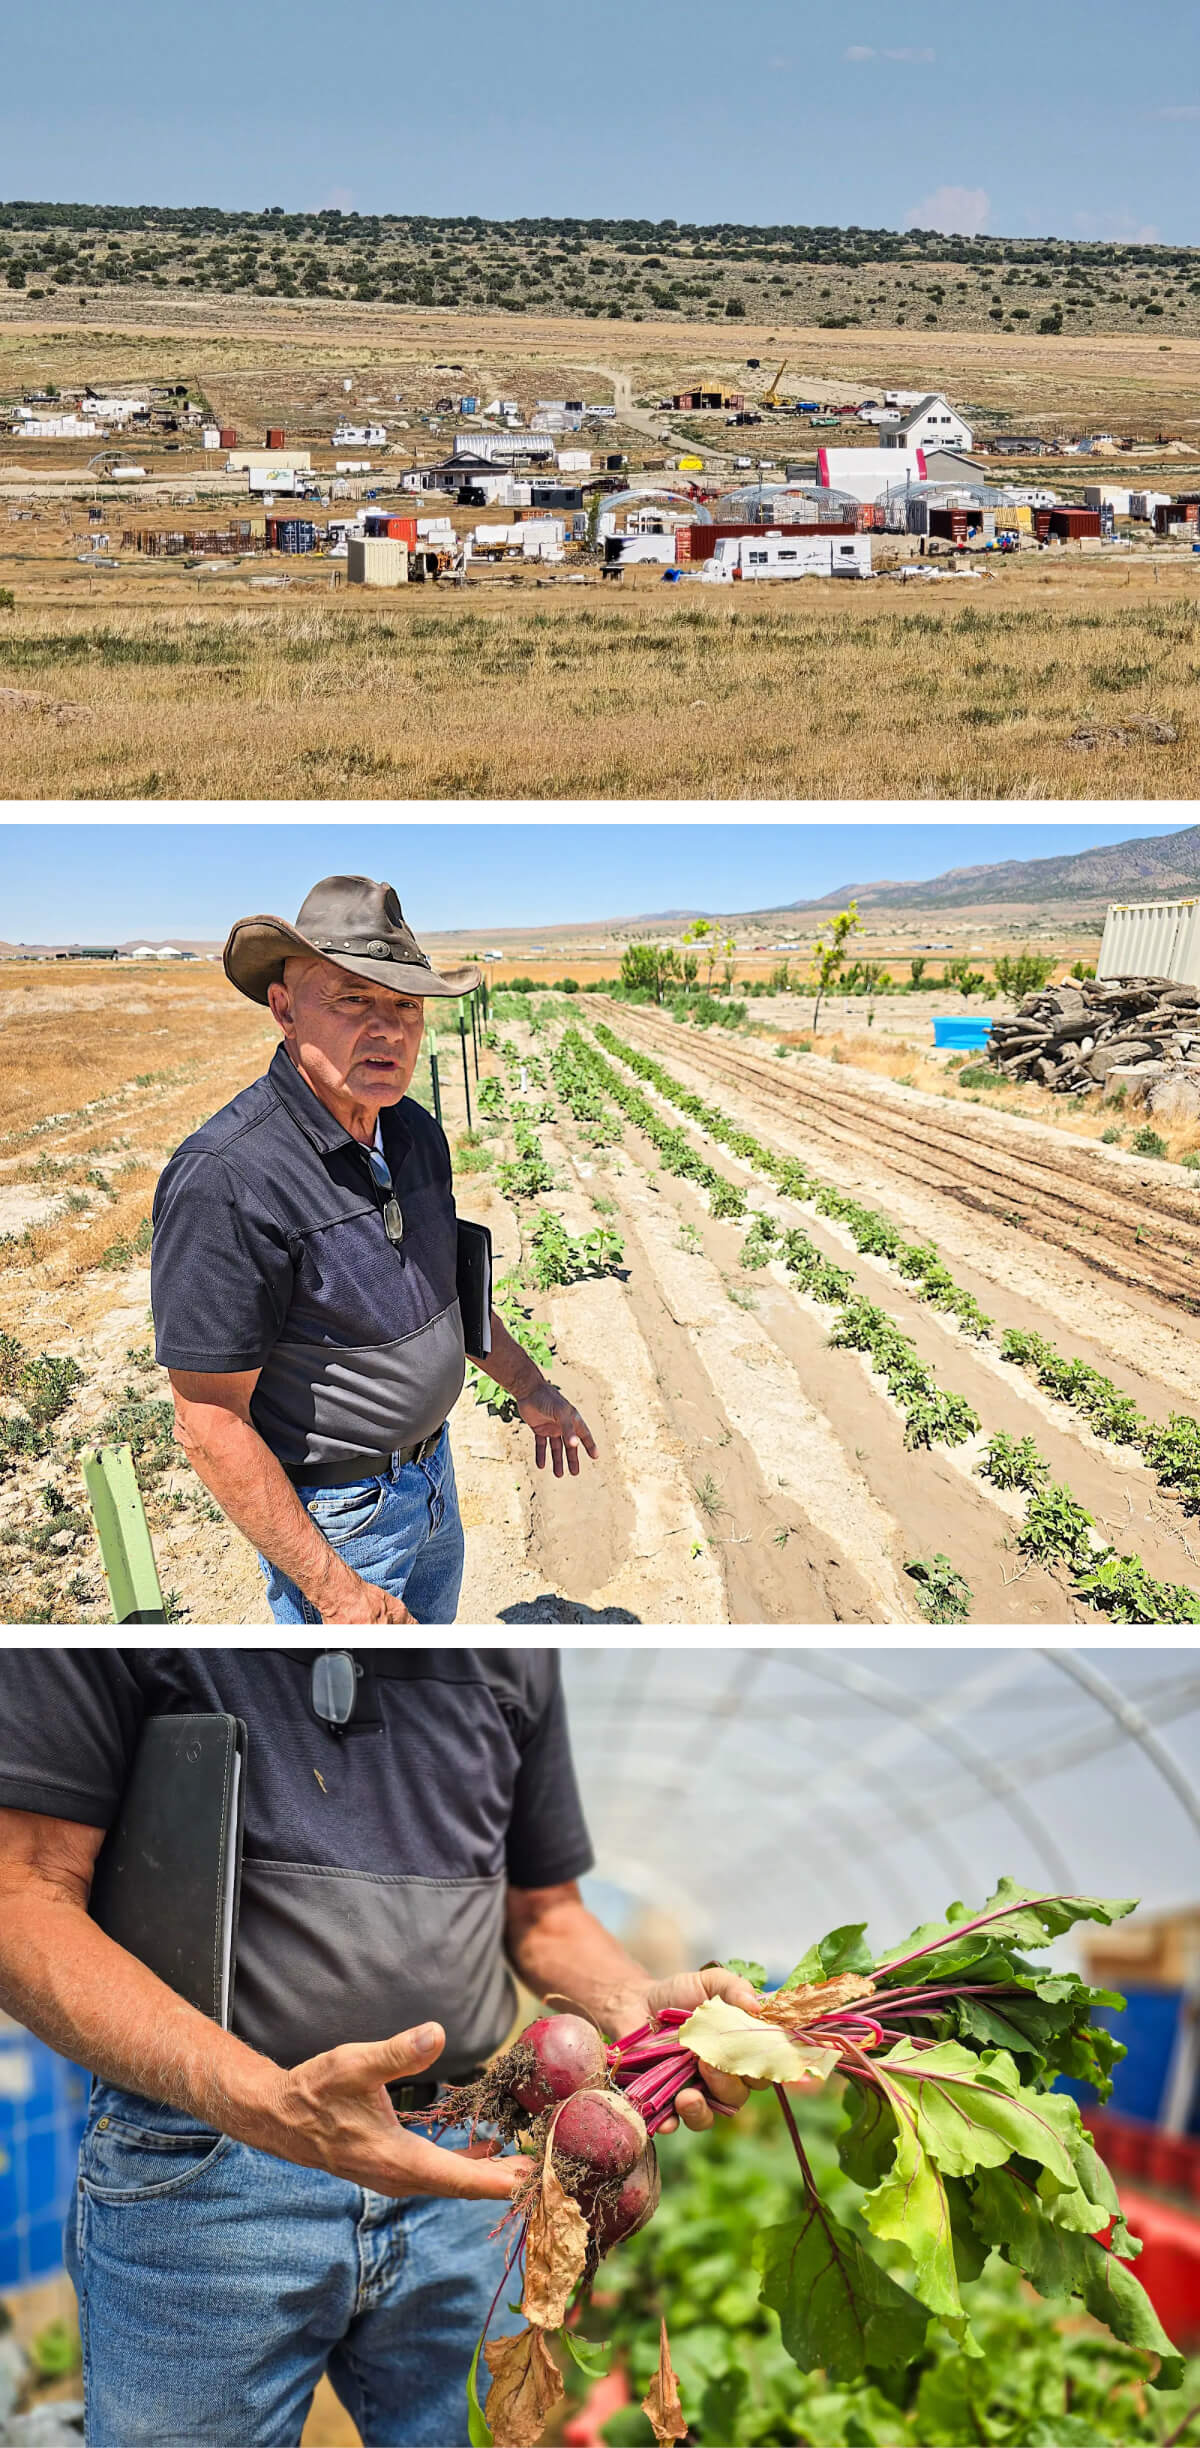 (Ảnh trên cùng) Quang cảnh phía nam của cộng đồng Chiến dịch Tự lực Cánh sinh ở Utah, hôm 28/06/2024. (Ảnh giữa) Ông Phil Gleason, người sáng lập Chiến dịch Tự lực Cánh sinh ở Utah, rảo bước qua một vườn rau đang sinh trưởng, hôm 28/06/2024. (Ảnh dưới cùng) Ông Phil Gleason cho xem mấy củ cải đường ông trồng trong nhà kính, hôm 28/06/2024. (Ảnh: Allan Stein/The Epoch Times)